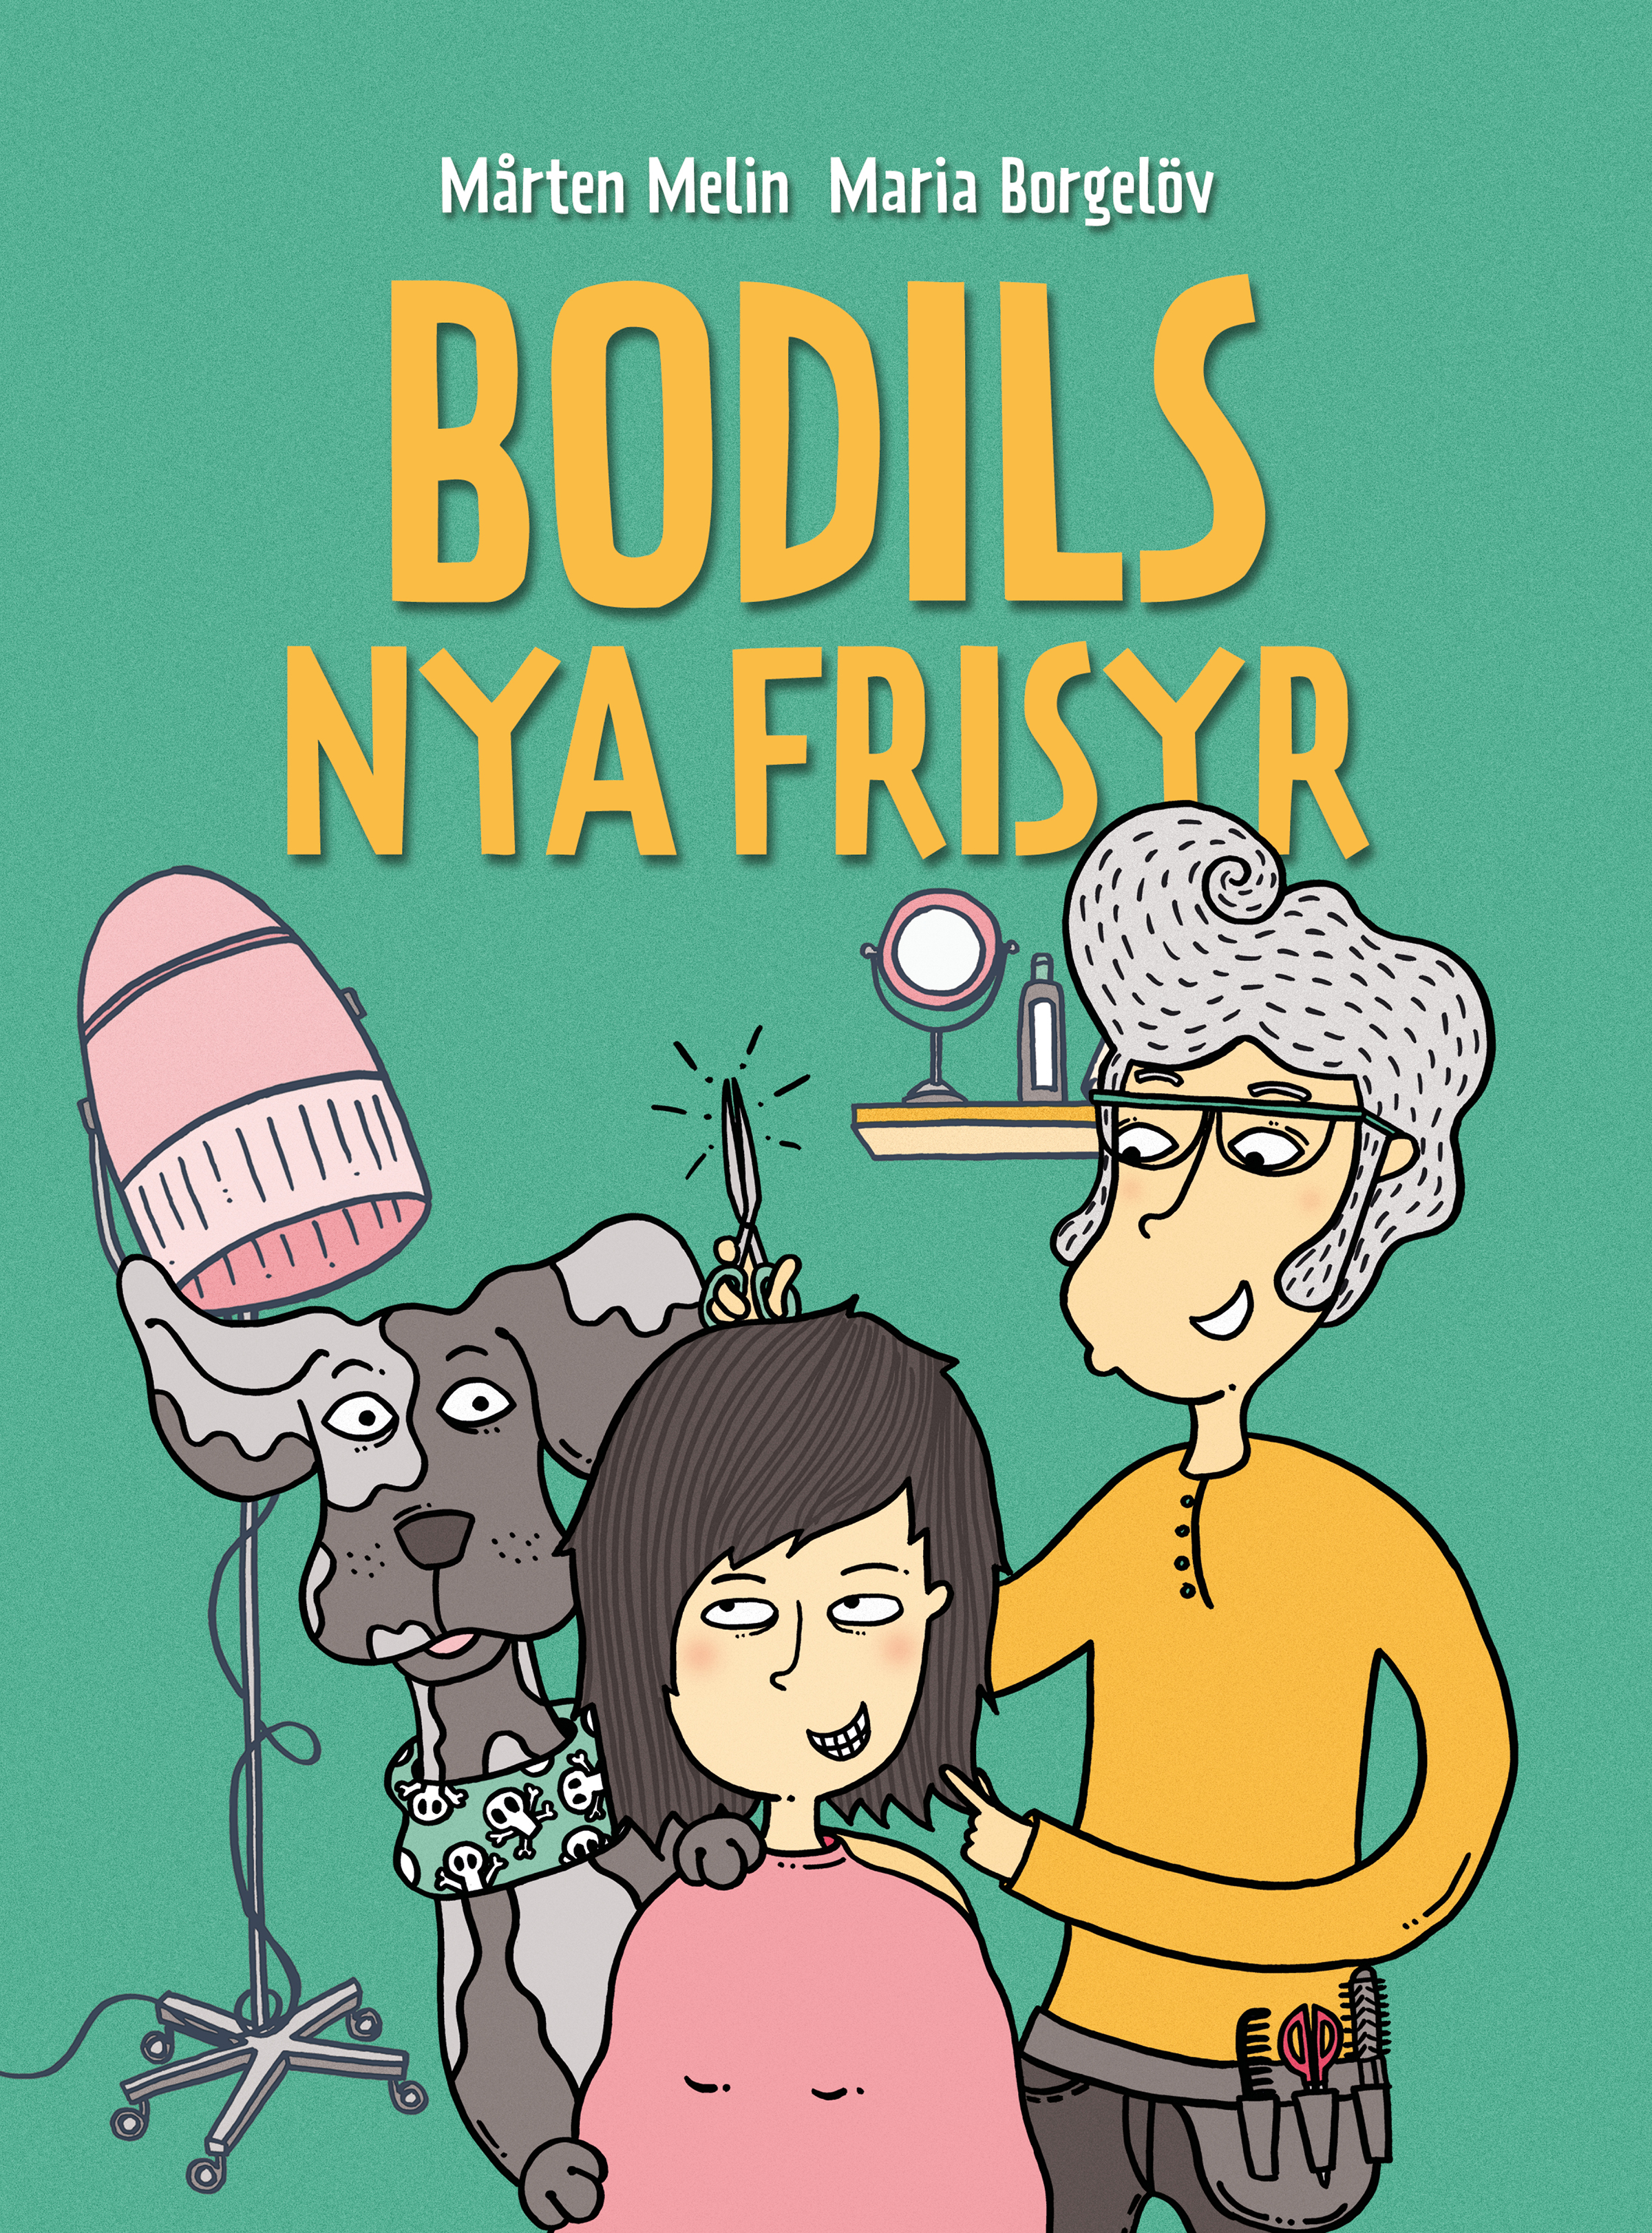 Bokomslag "Bodils nya frisyr". Illustration som föreställer en kvinna och hennes hund hos frisören.